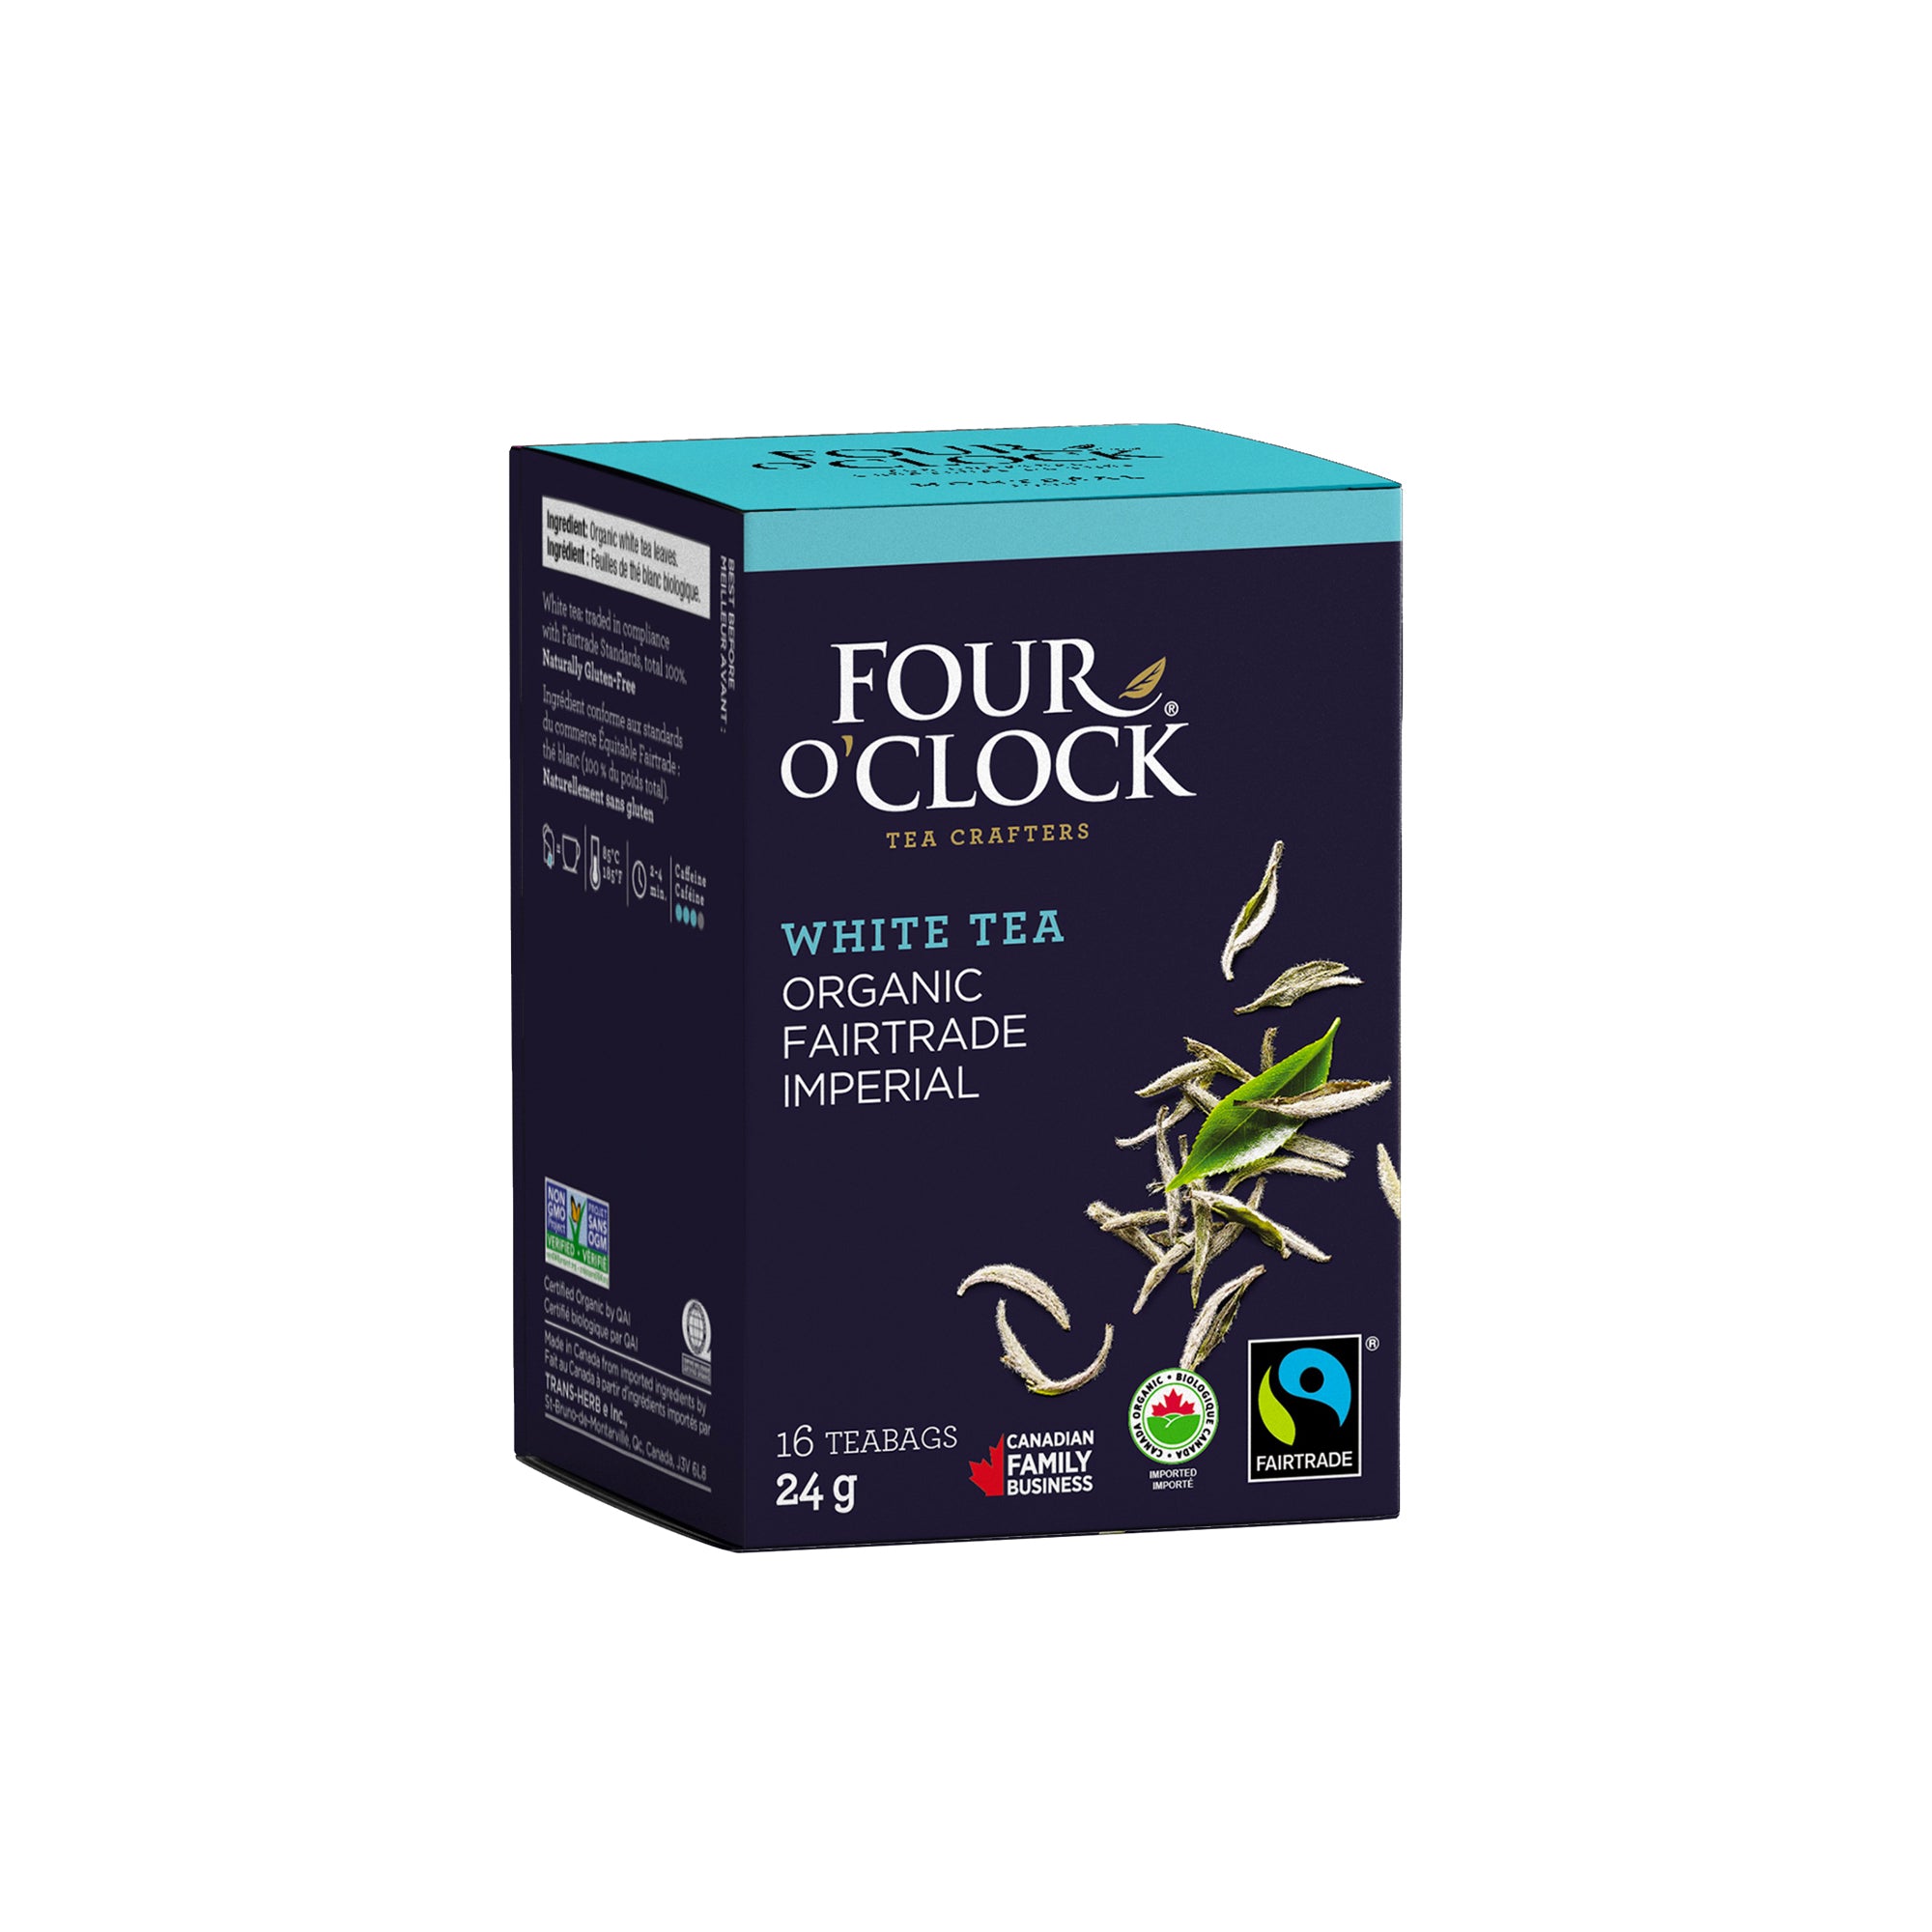 Menthe poivrée biologique, Sans caféine, 16 sachets de thé emballés, 24 g